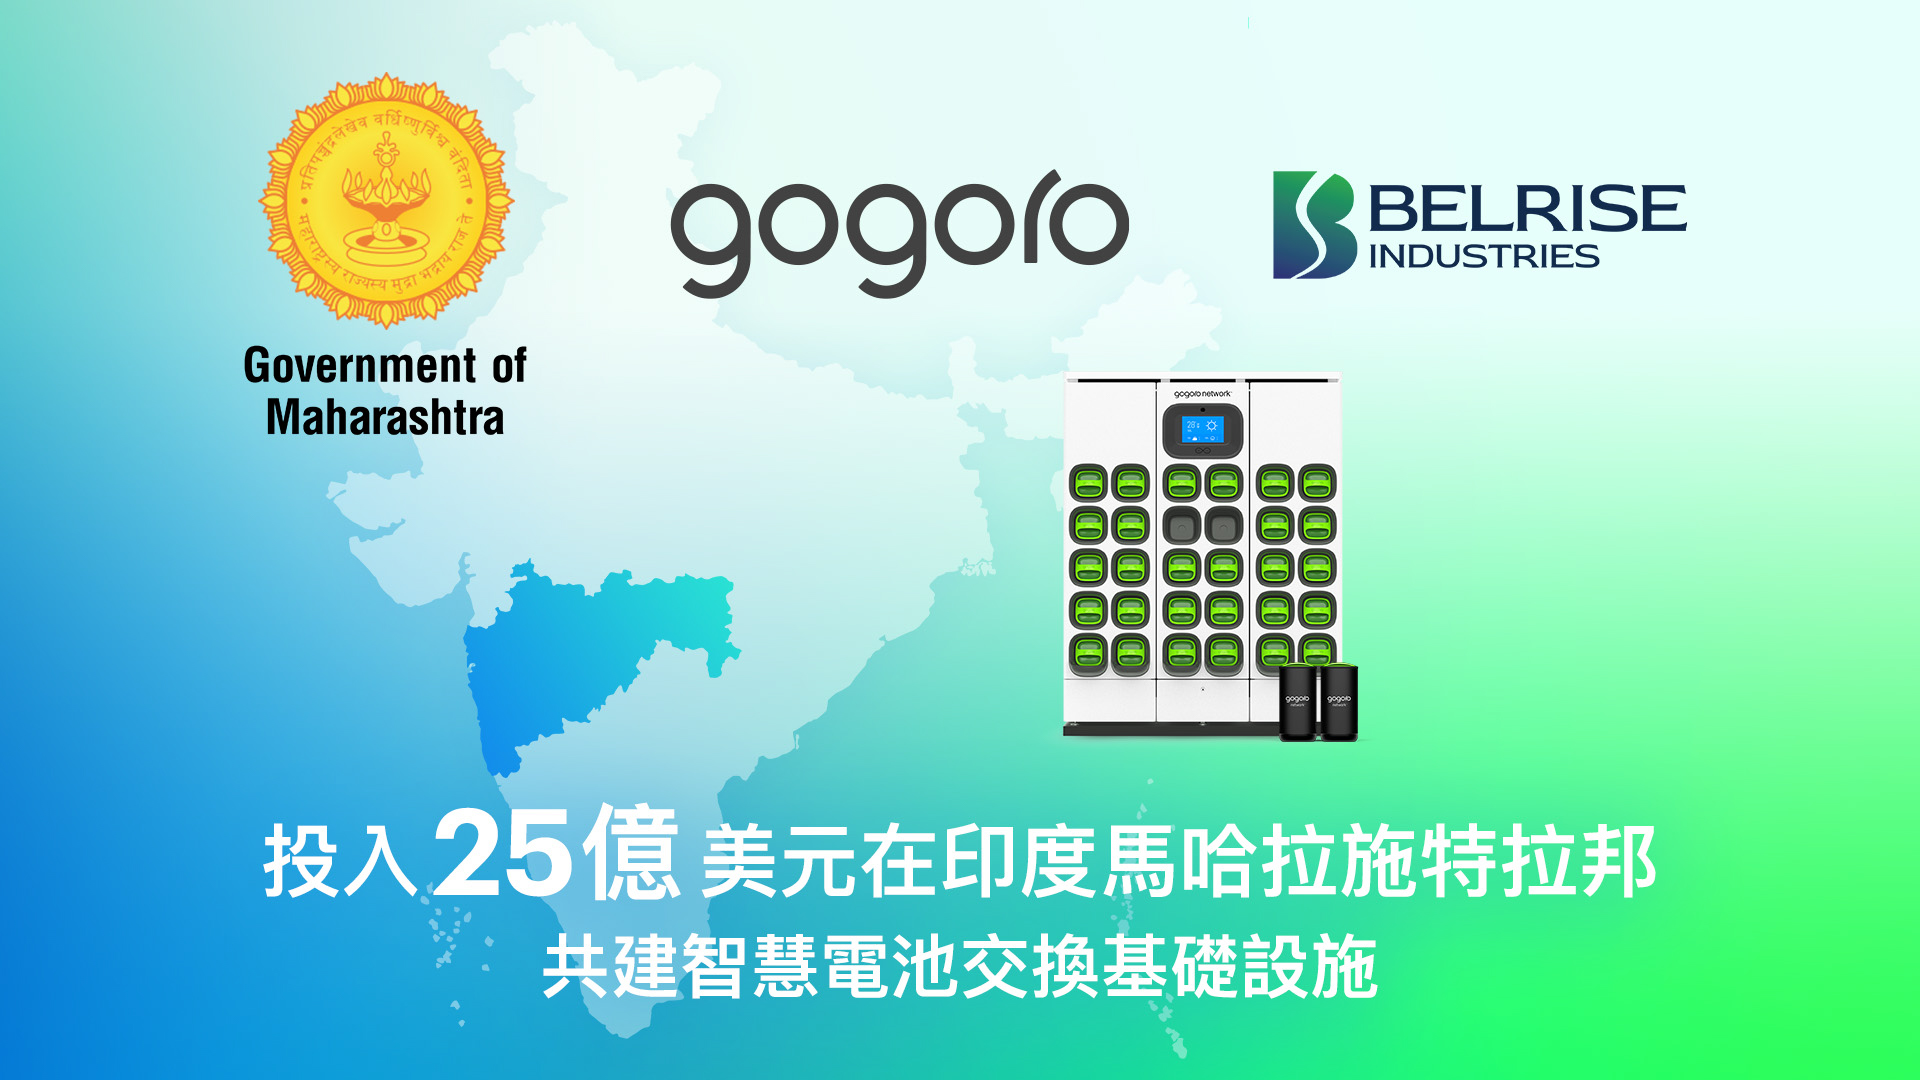 聚焦電池交換基礎設施，印度馬哈拉施特拉邦宣佈與 Gogoro 和 Belrise 簽署策略能源夥伴協議